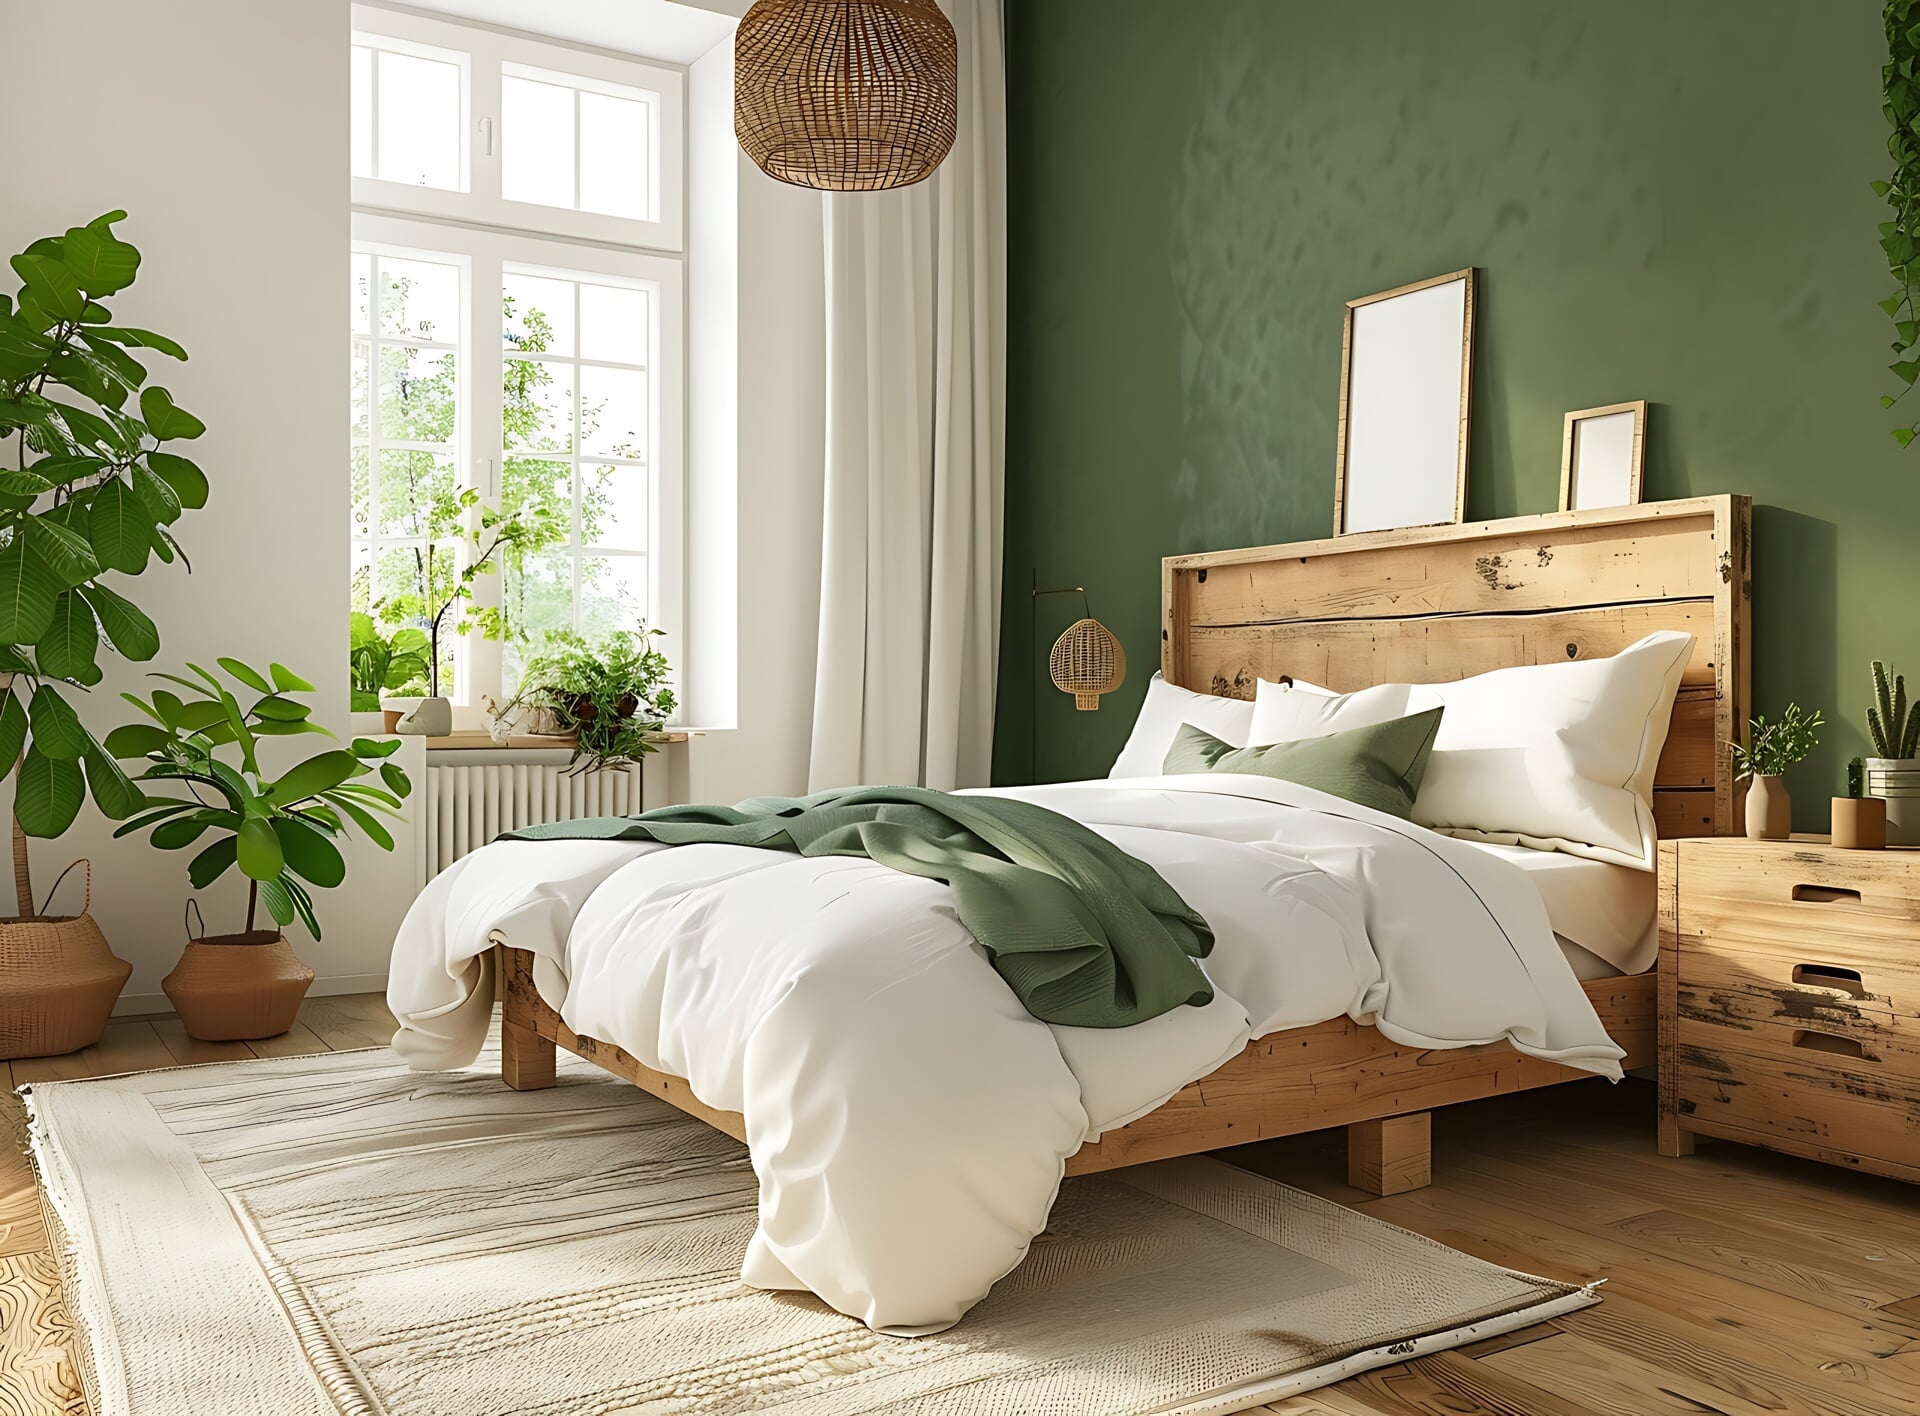 Mét deze tips maak je de slaapkamer lekker duurzaam. 